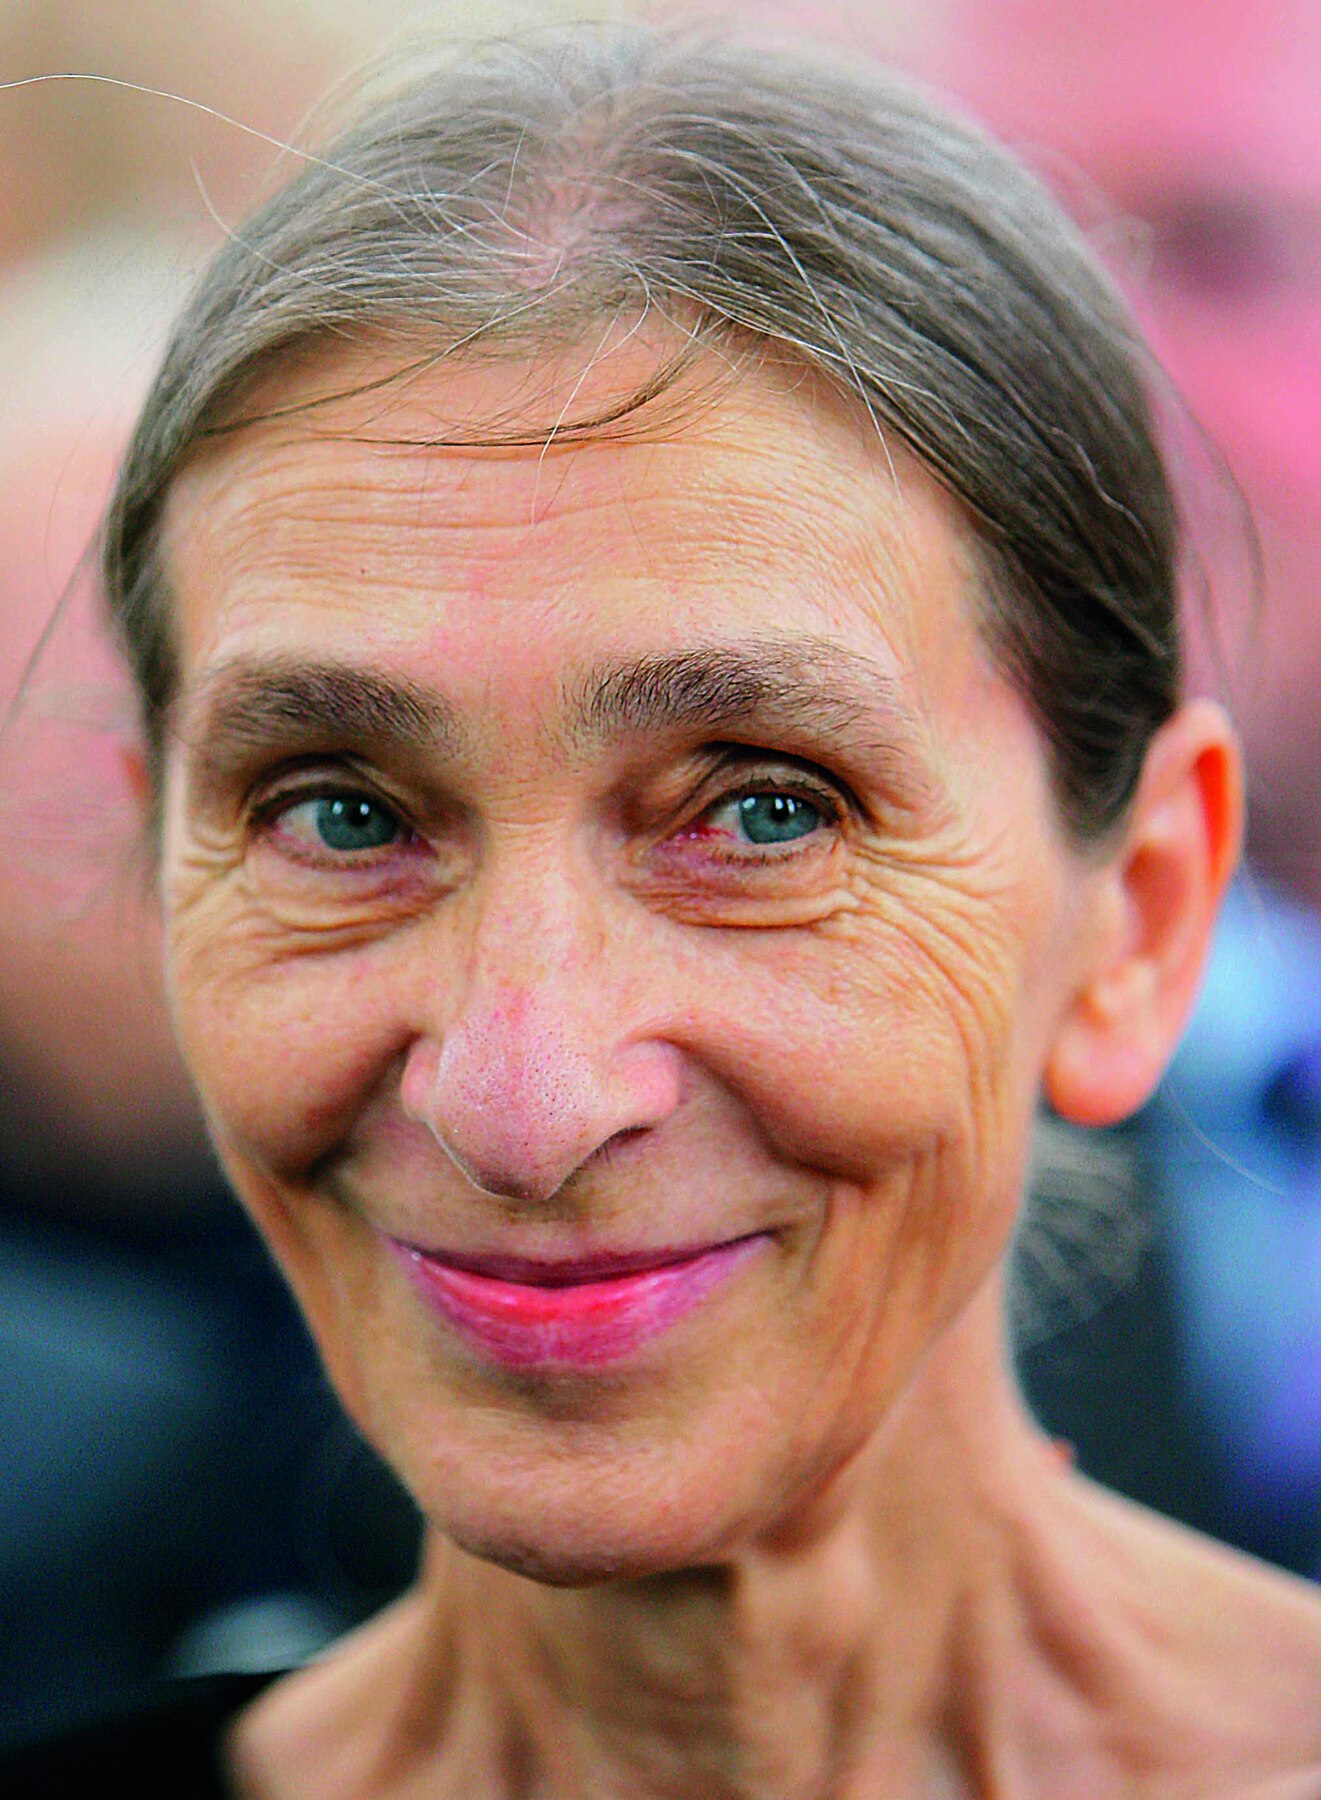 Fotografia. Retrato de uma mulher idosa de cabelo grisalho preso. Ela sorri.